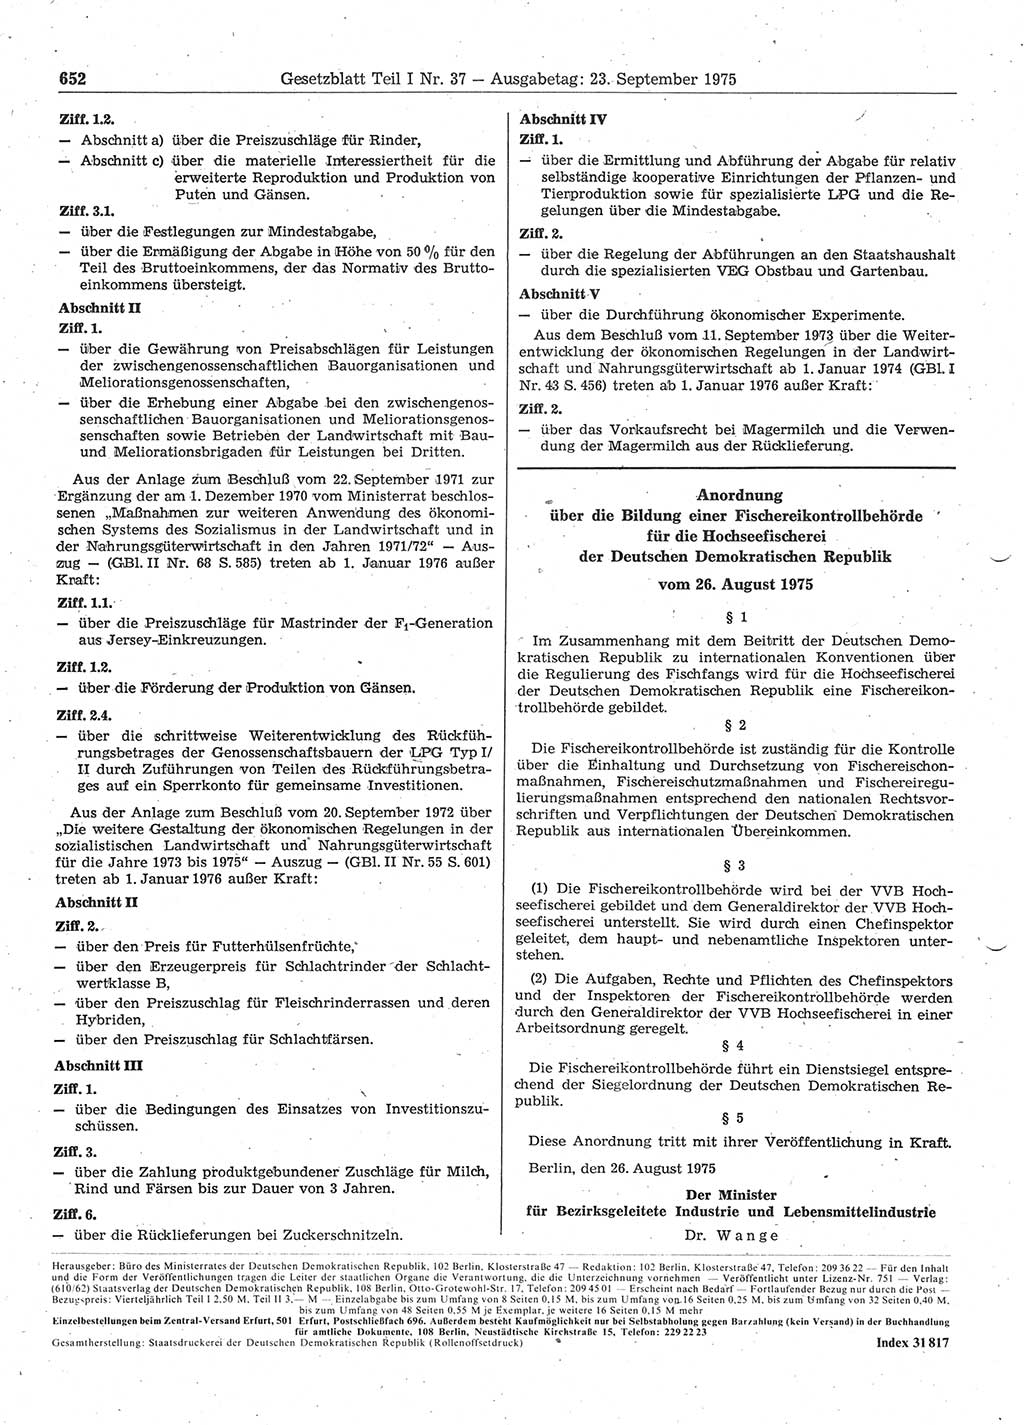 Gesetzblatt (GBl.) der Deutschen Demokratischen Republik (DDR) Teil Ⅰ 1975, Seite 652 (GBl. DDR Ⅰ 1975, S. 652)